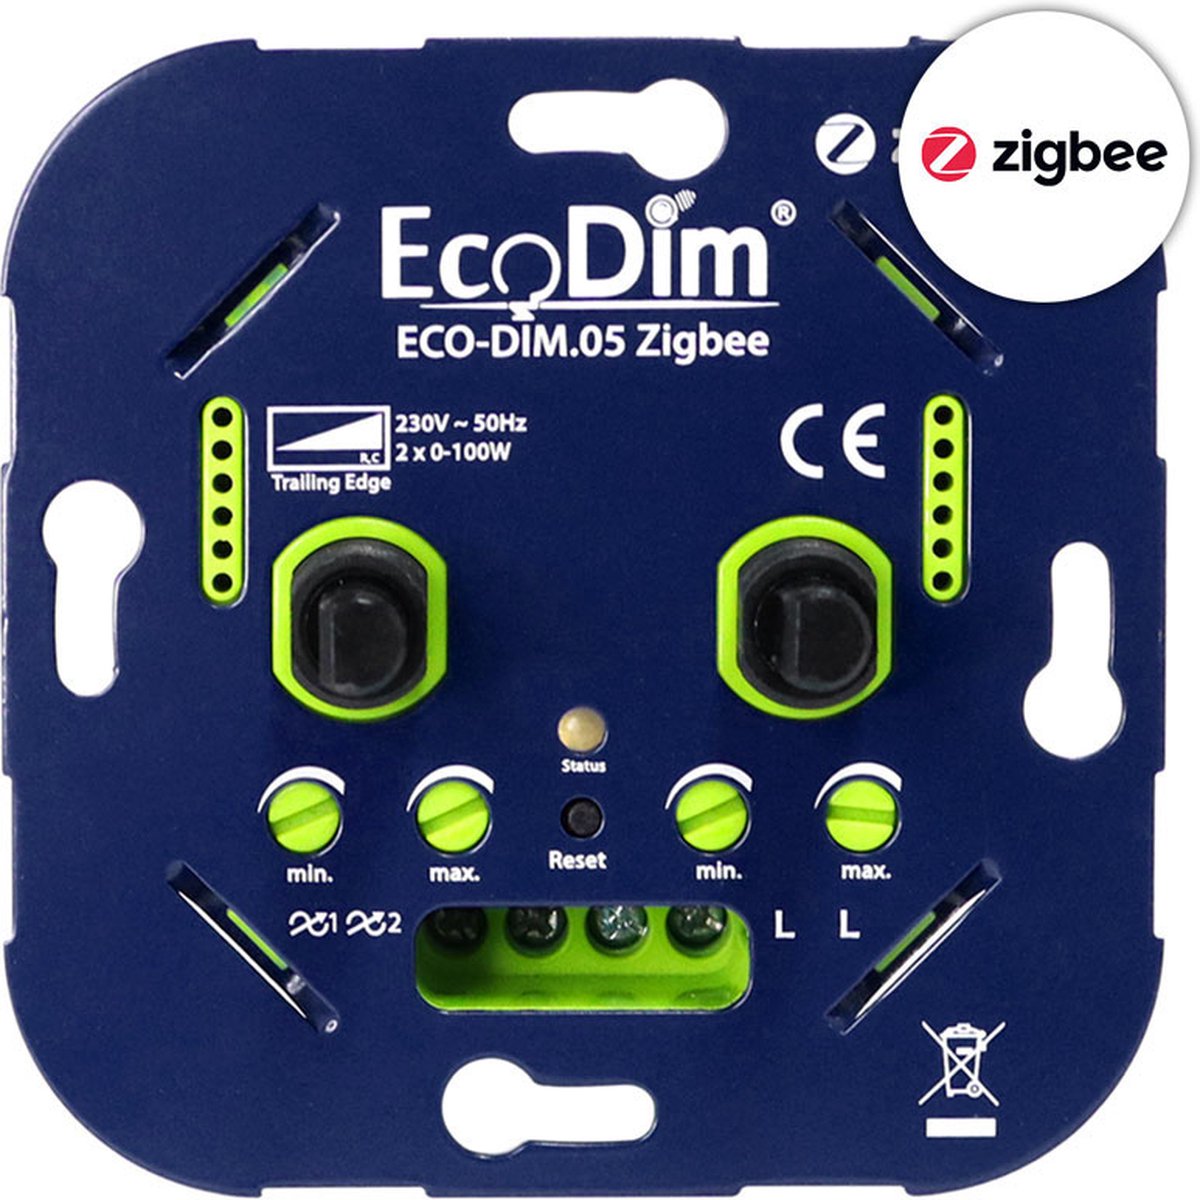 EcoDim Zigbee duo led dimmer, ECO-DIM.05 Zigbee, druk/draai, kleine inbouwdiepte, 2x 100W LED, bijpassend afdekmateriaal verkrijgbaar